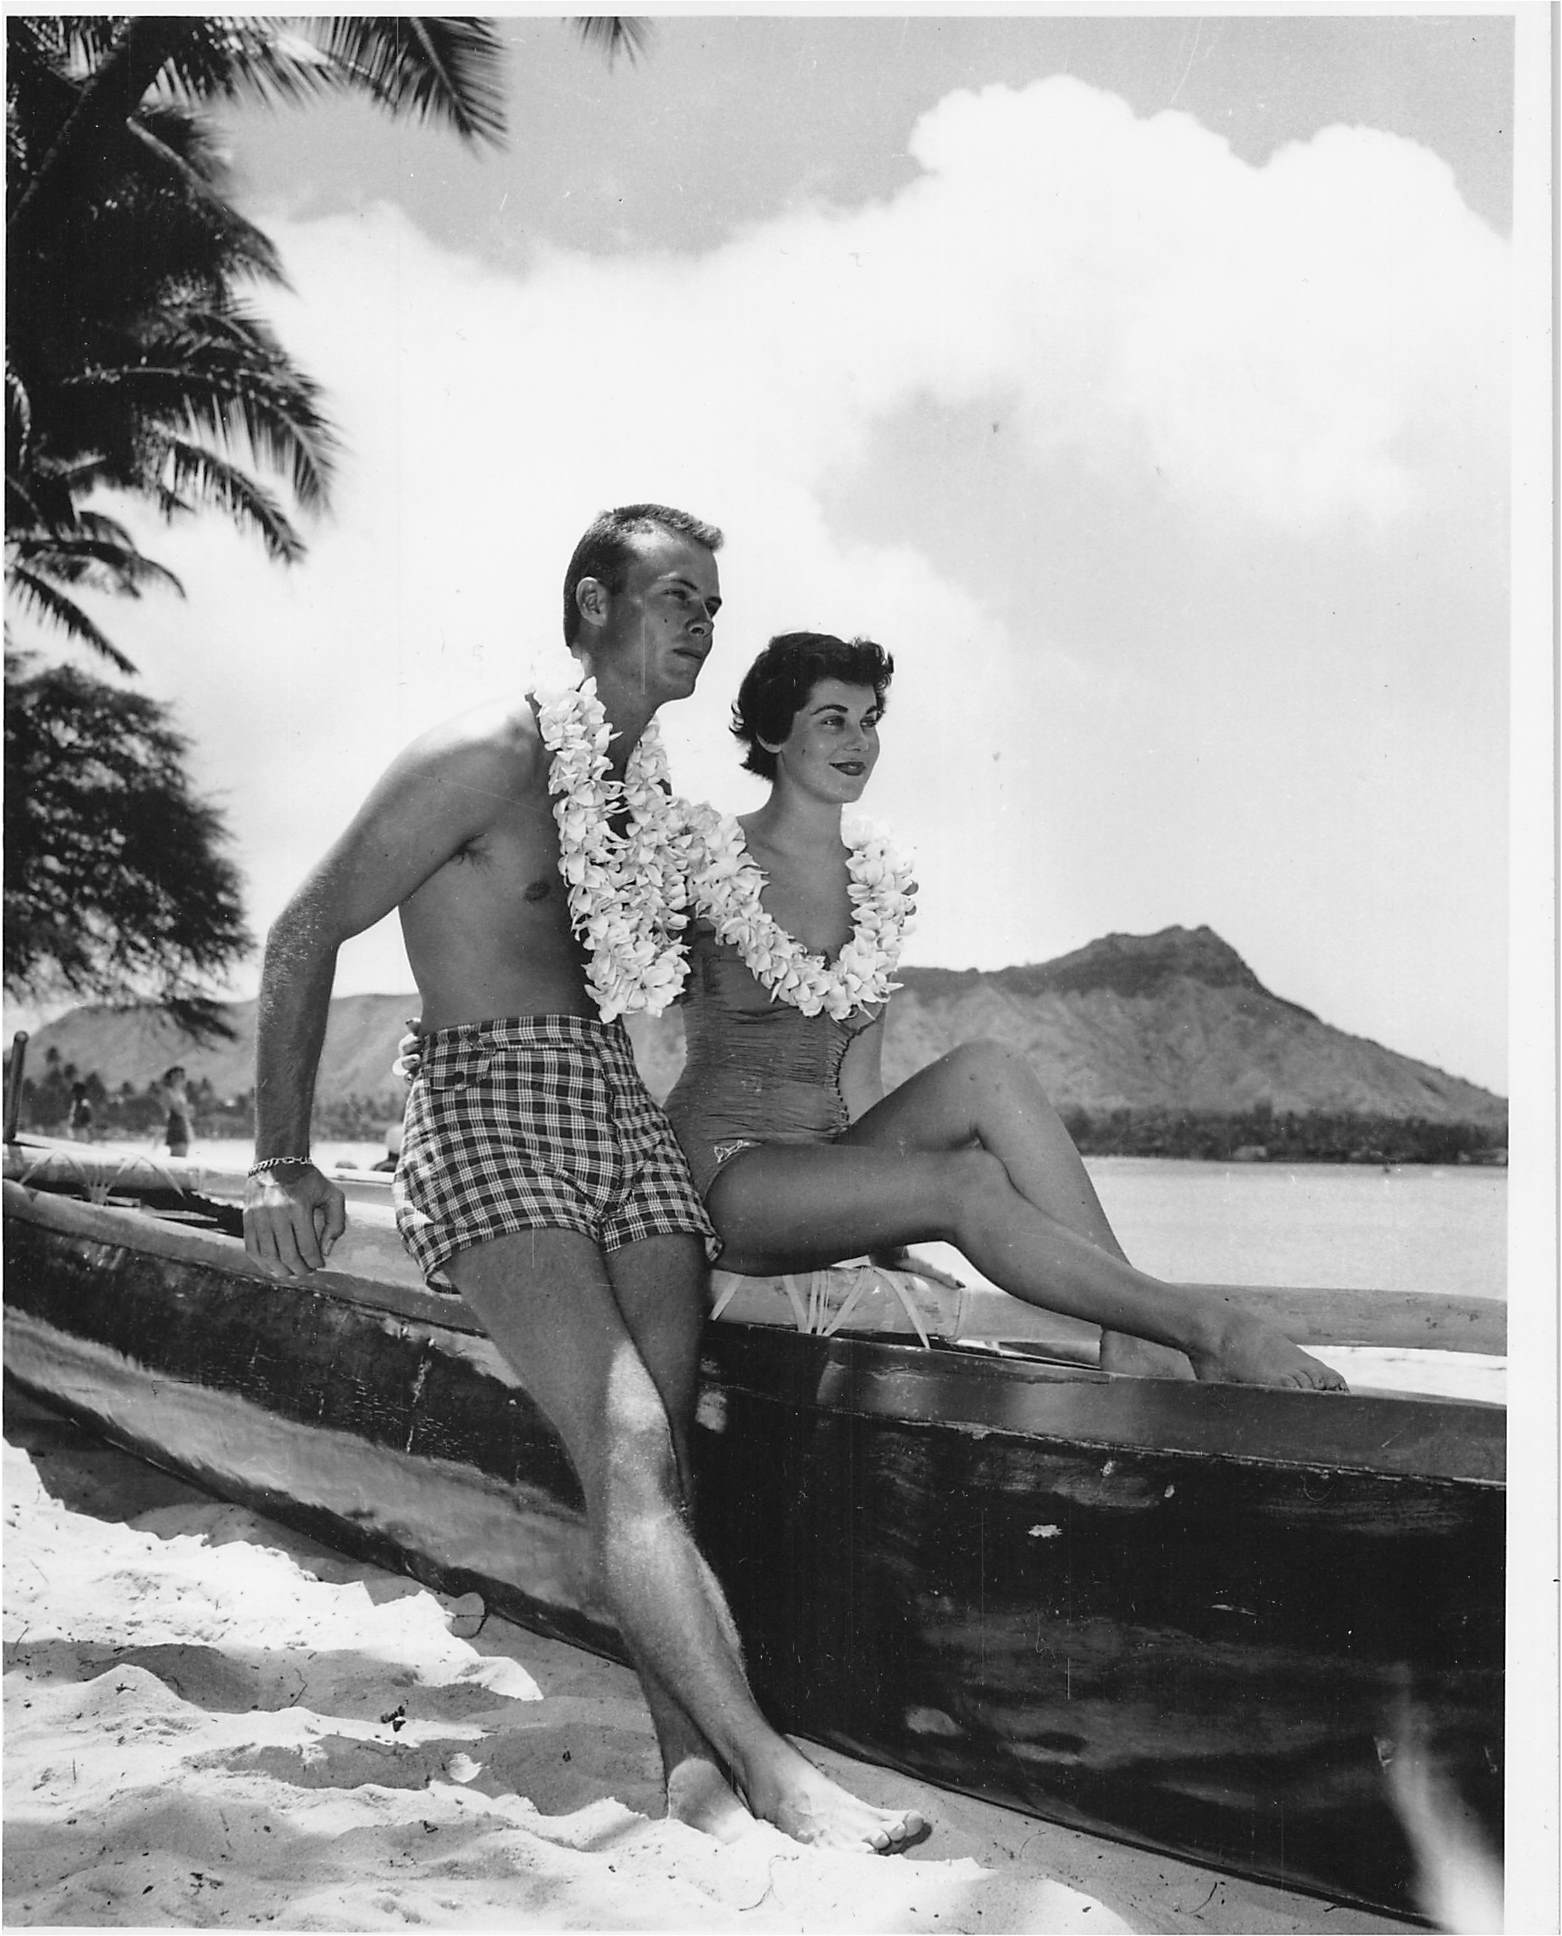  Bob and Miss Australia, Maxine Morgan, Hawaii, Summer 1953. 